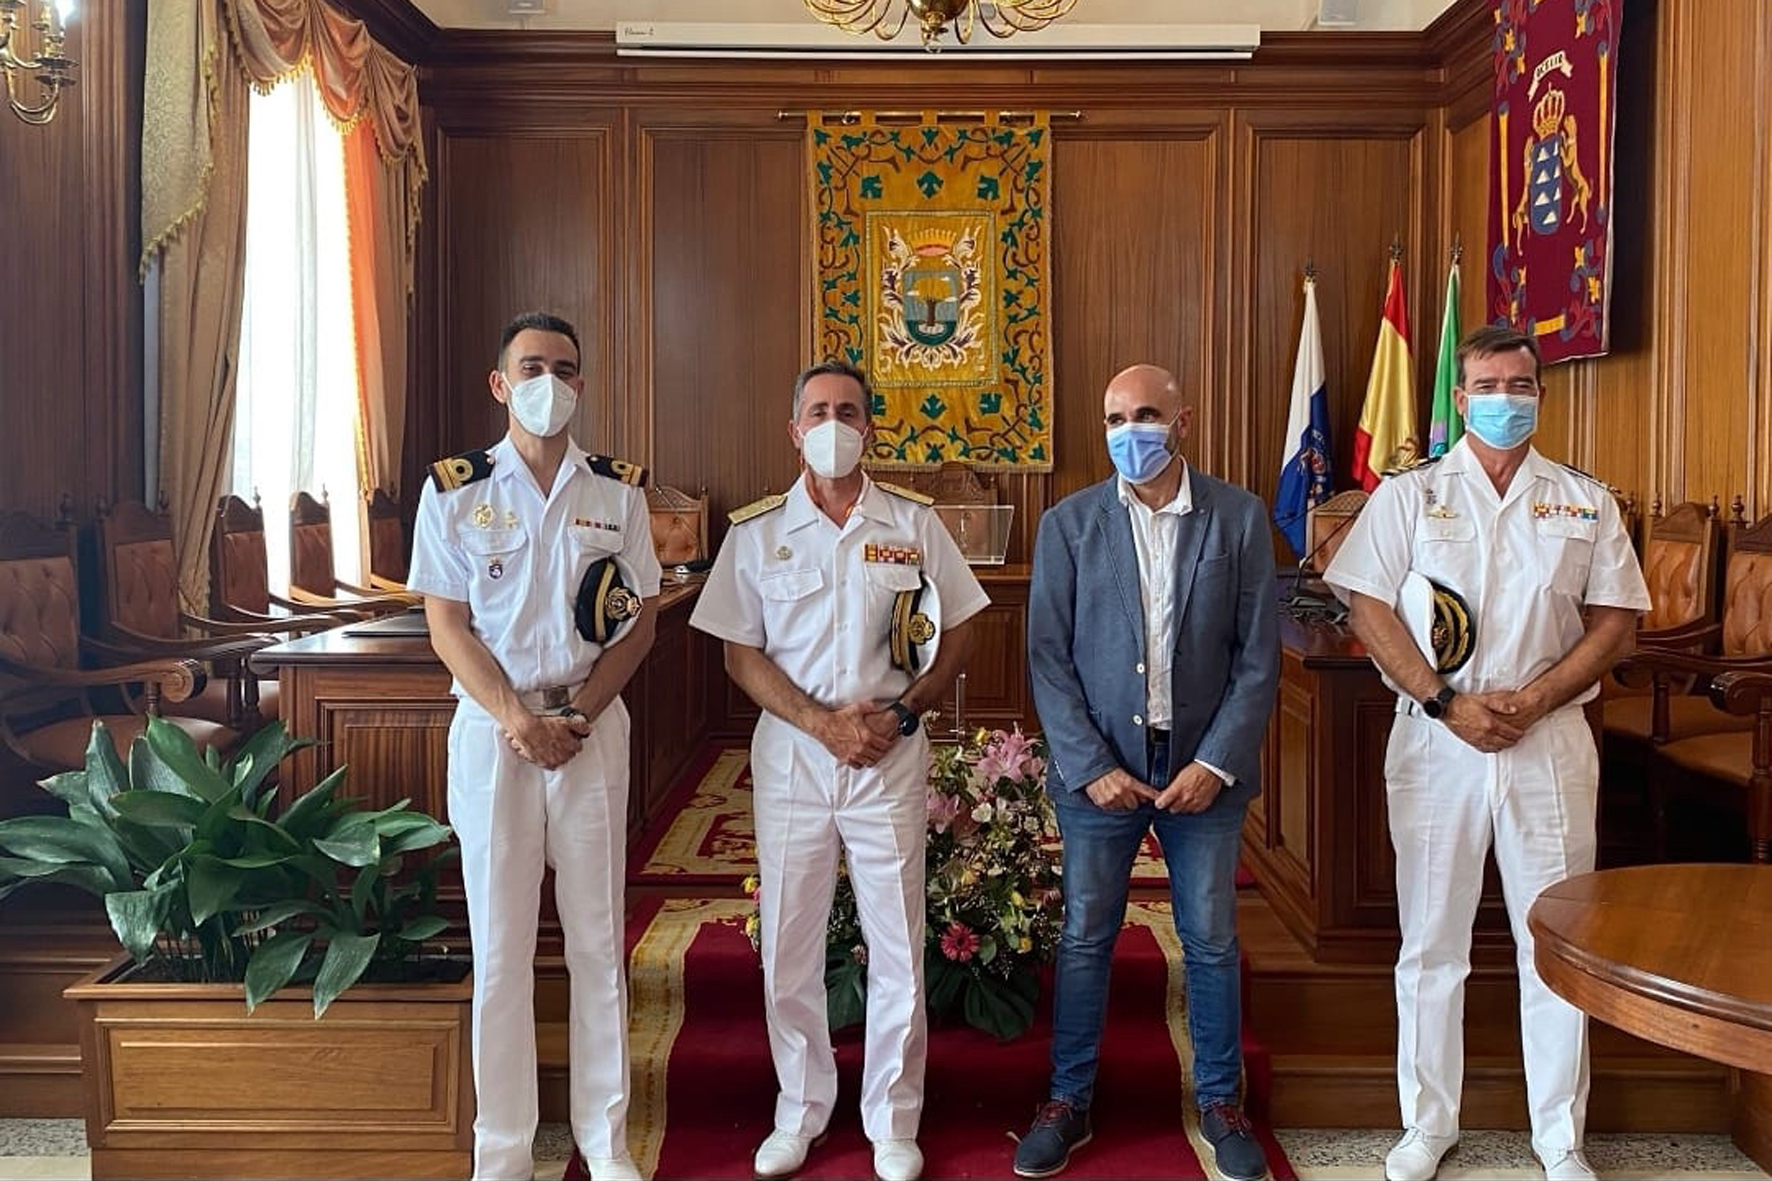 El Mando naval de Canarias visita el Ayuntamiento de Valverde